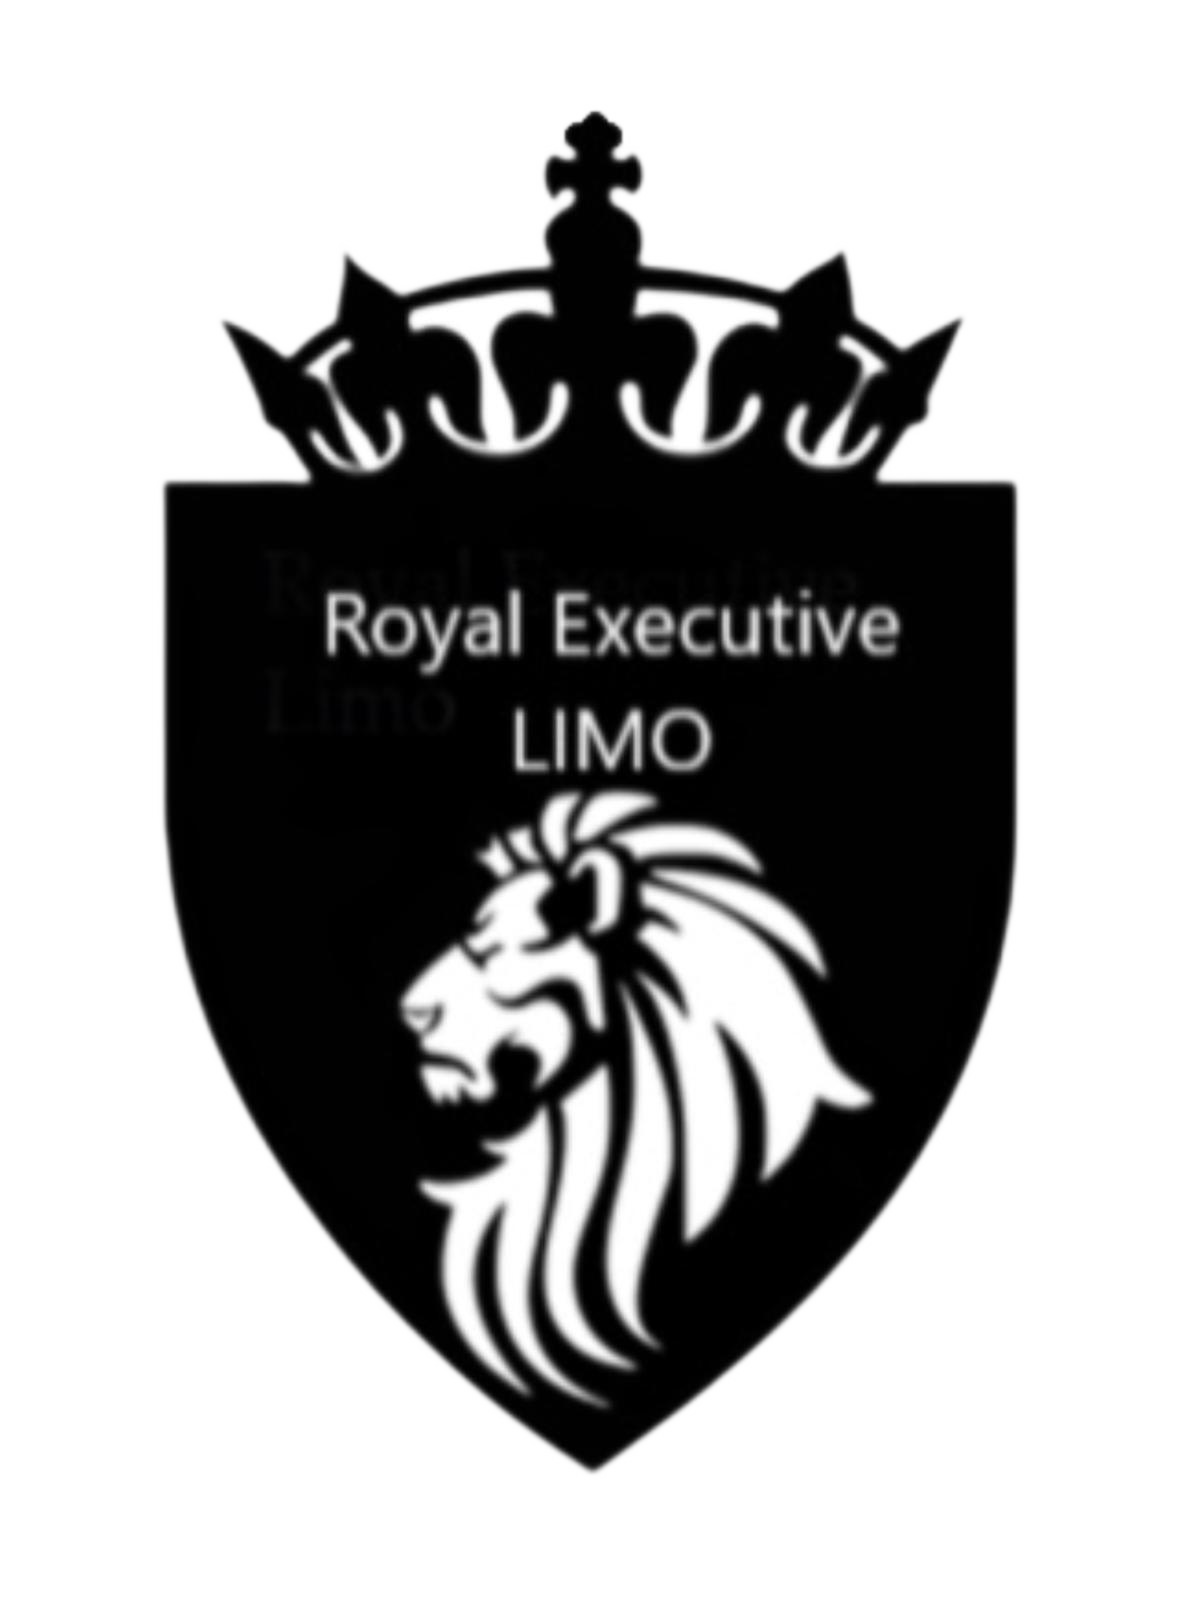 Royal Executive Limo